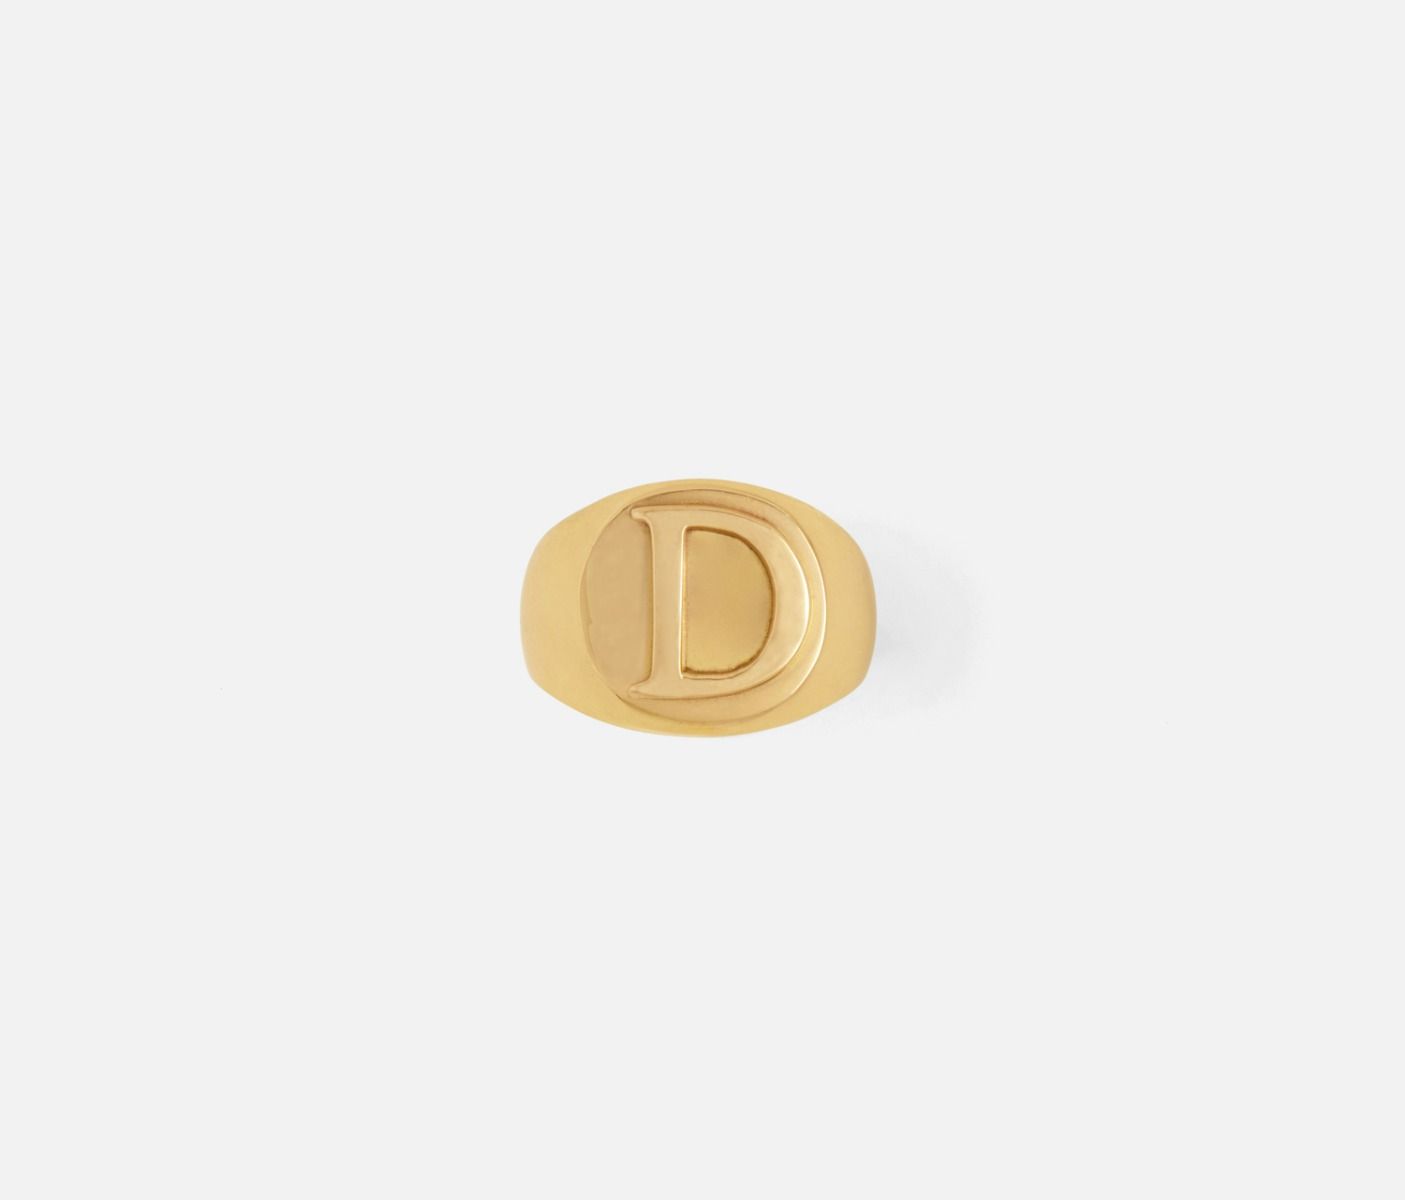 Clark Monogram Napkin Ring "D"